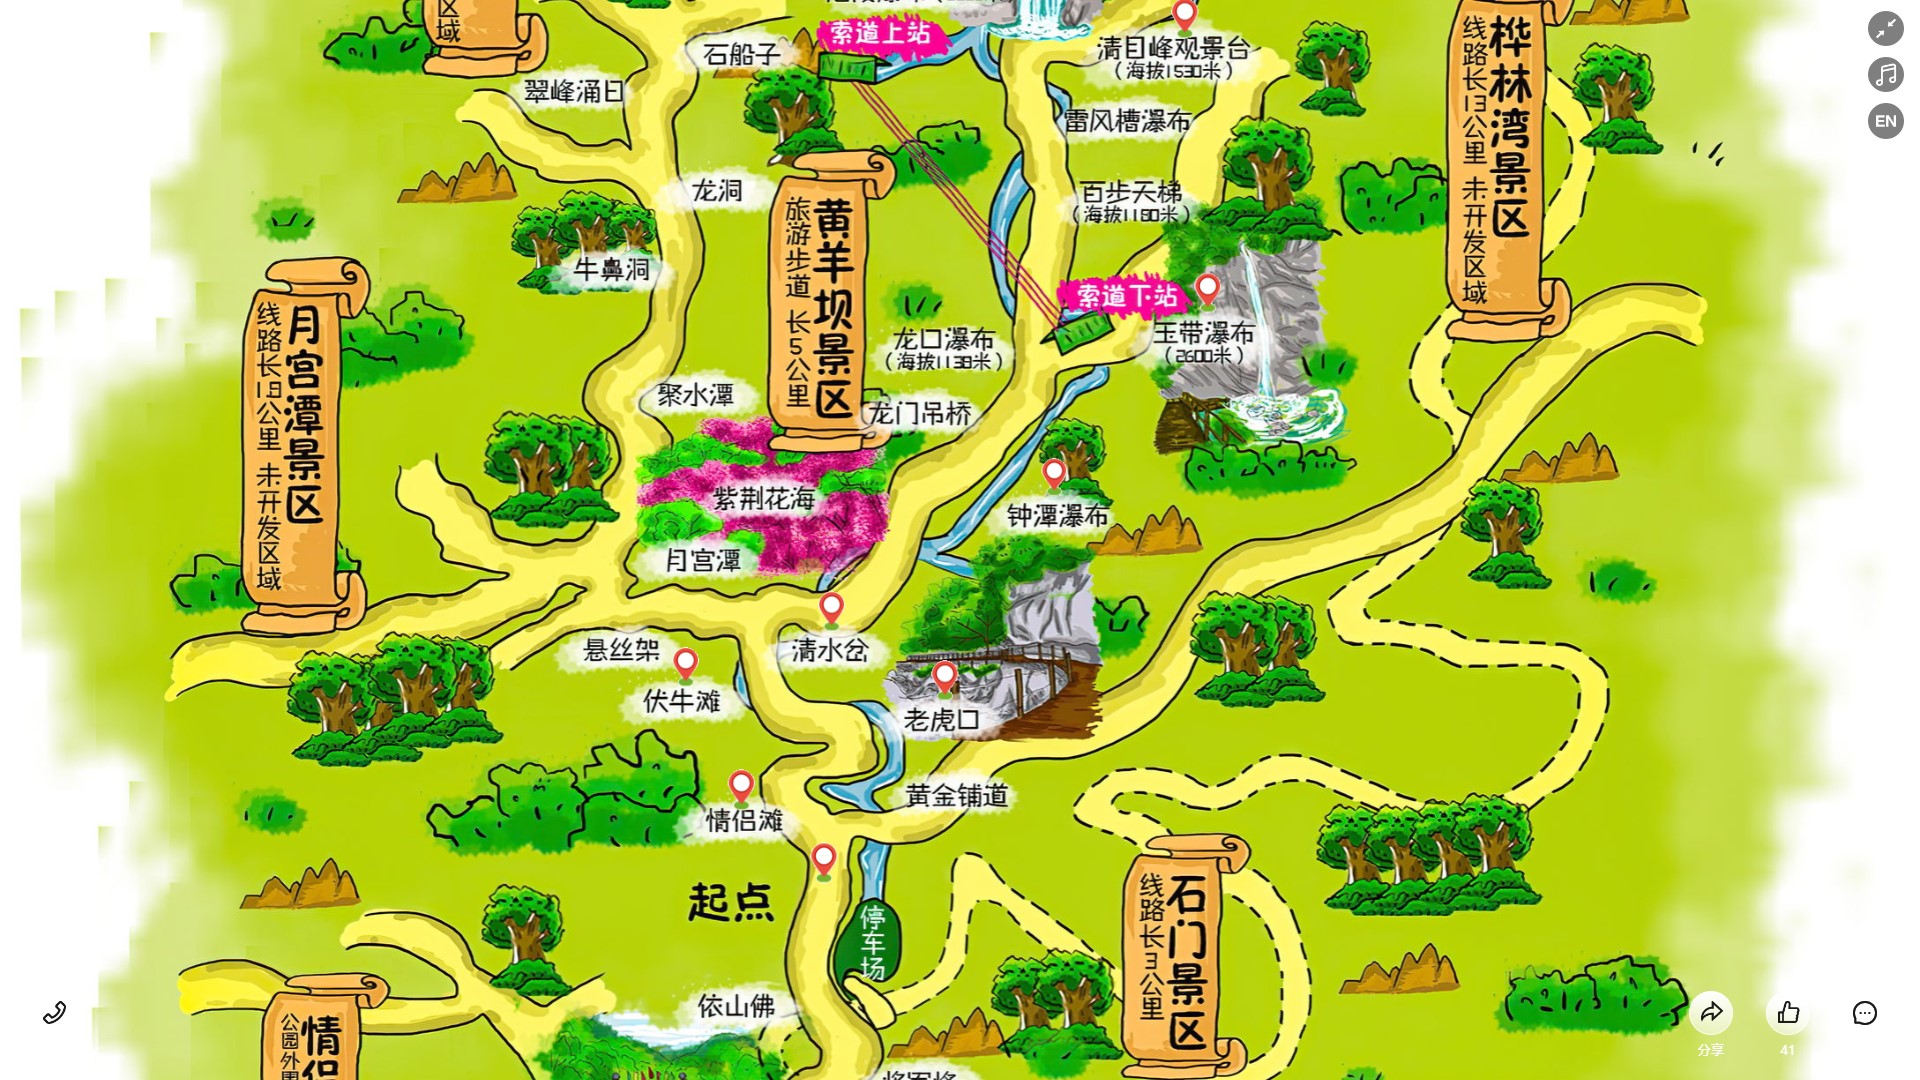 稻城景区导览系统